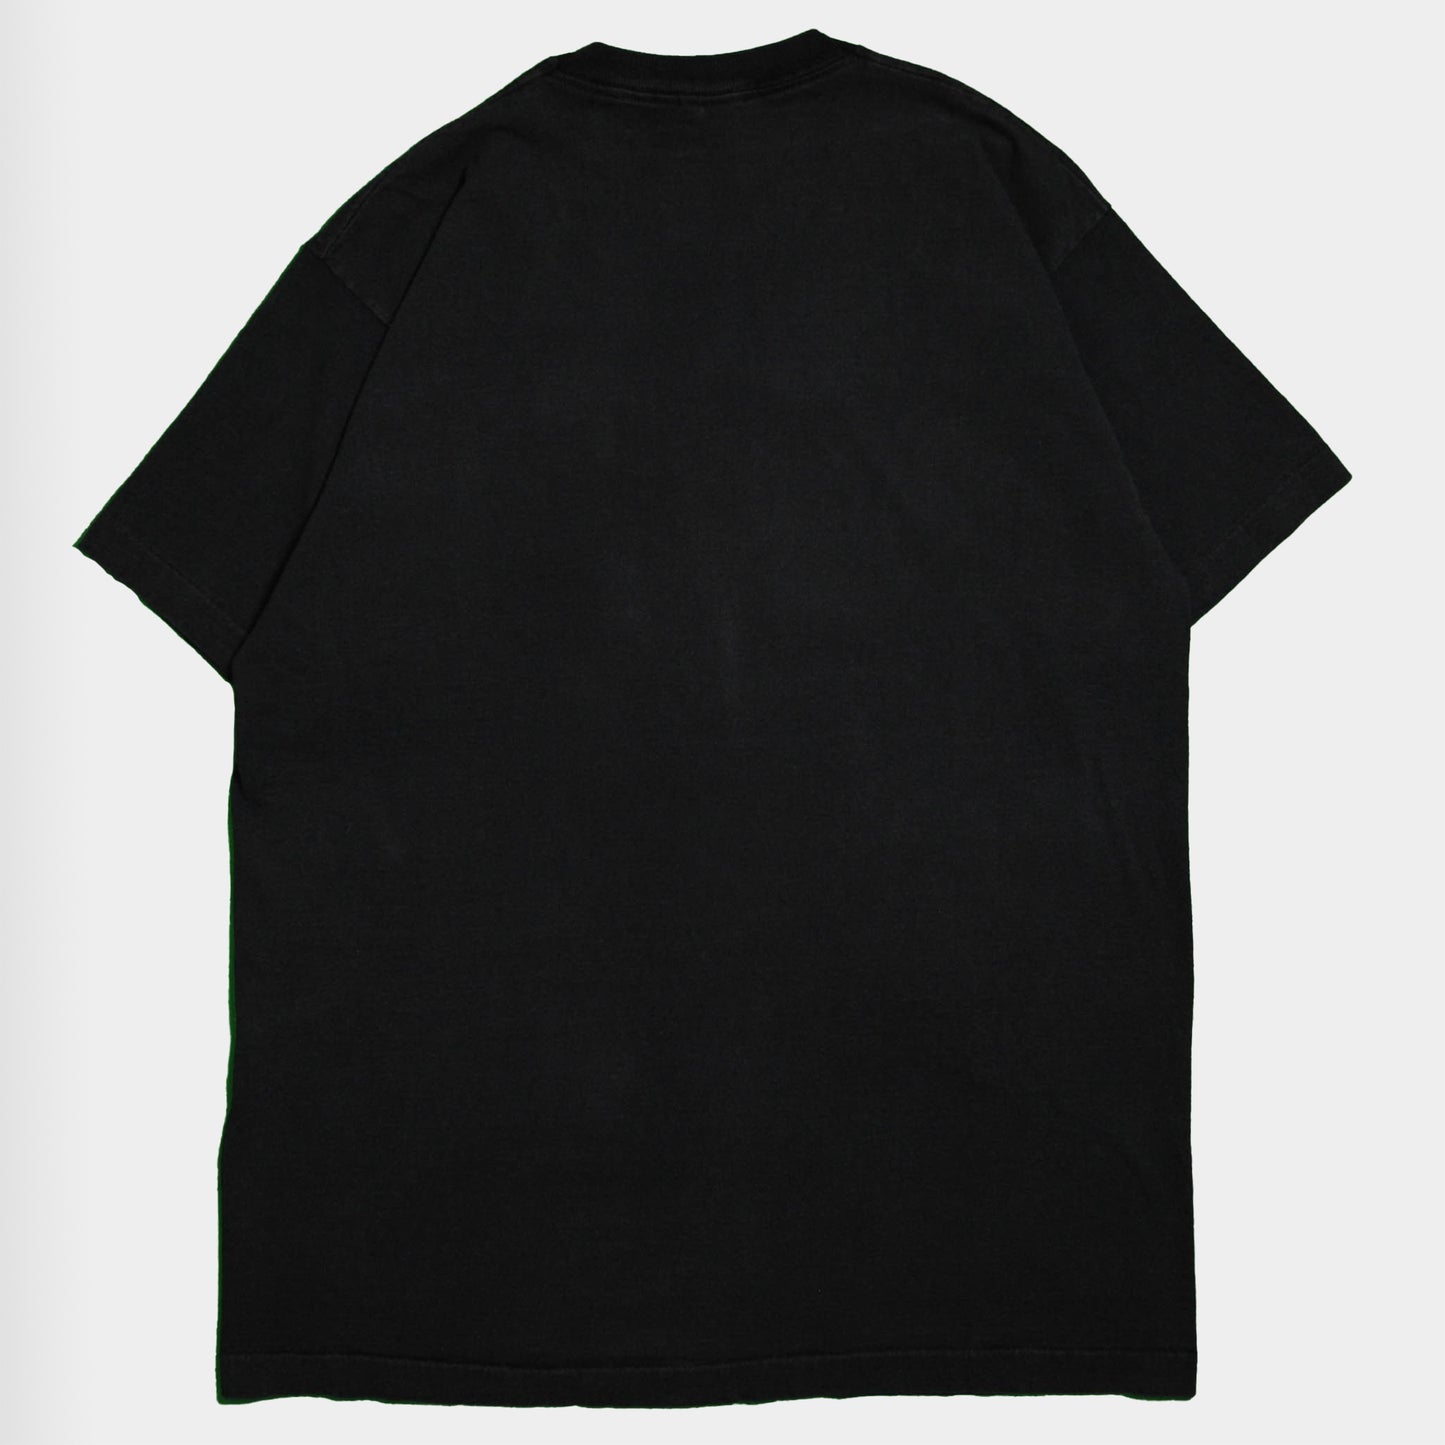 90's CASIO "BOSS" Tシャツ (XL)/A2766T-S